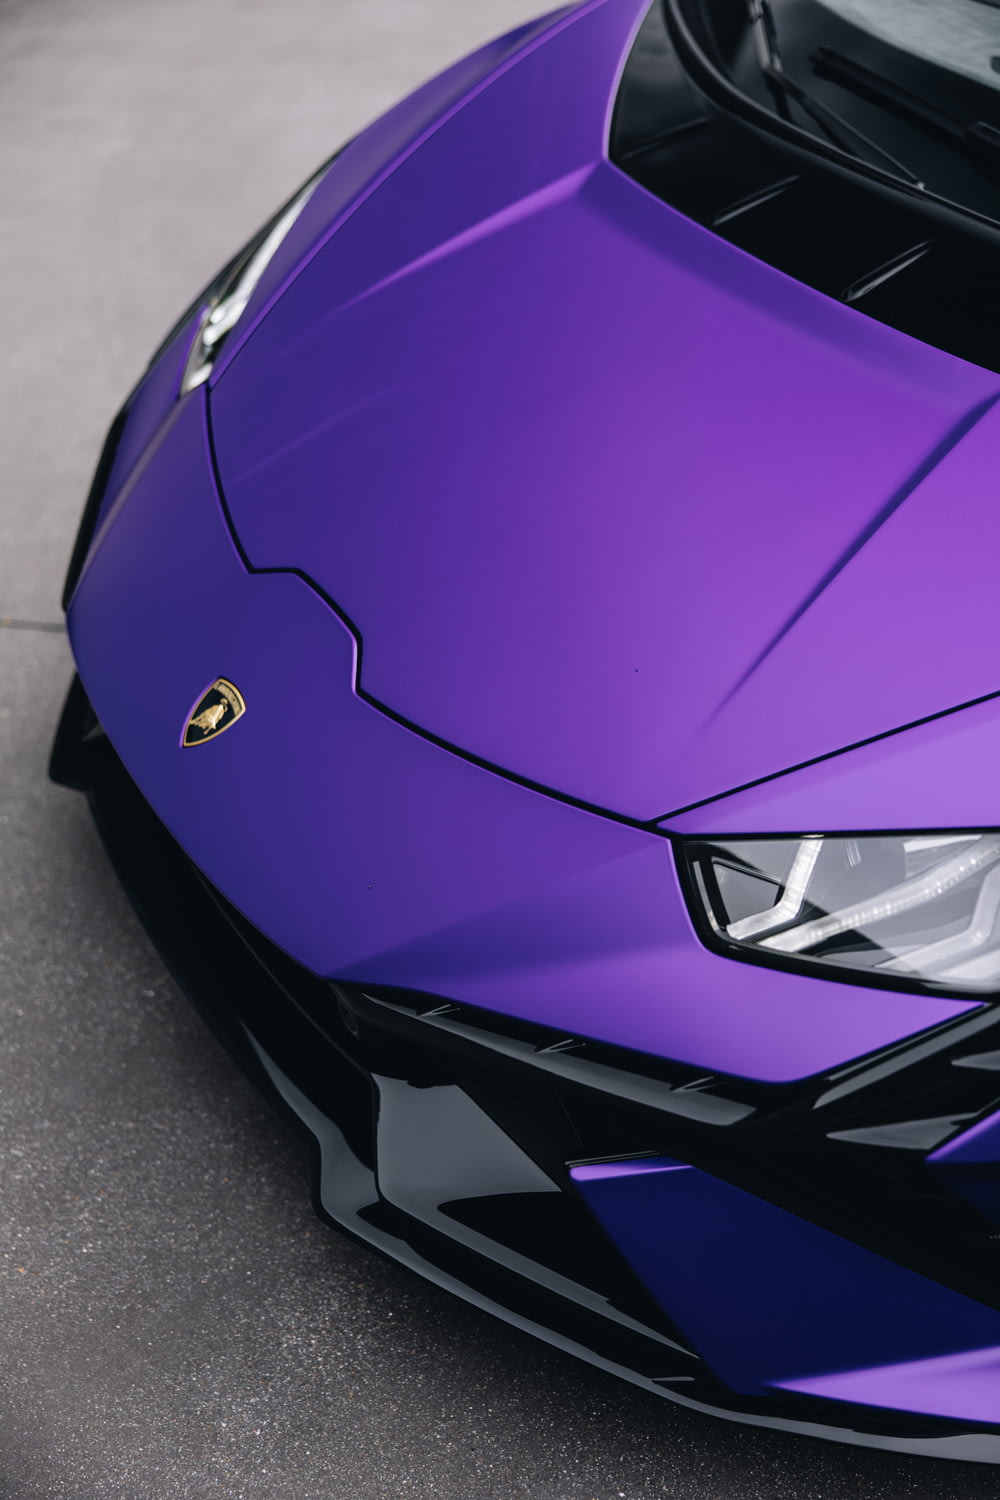 a close up of a purple sports car